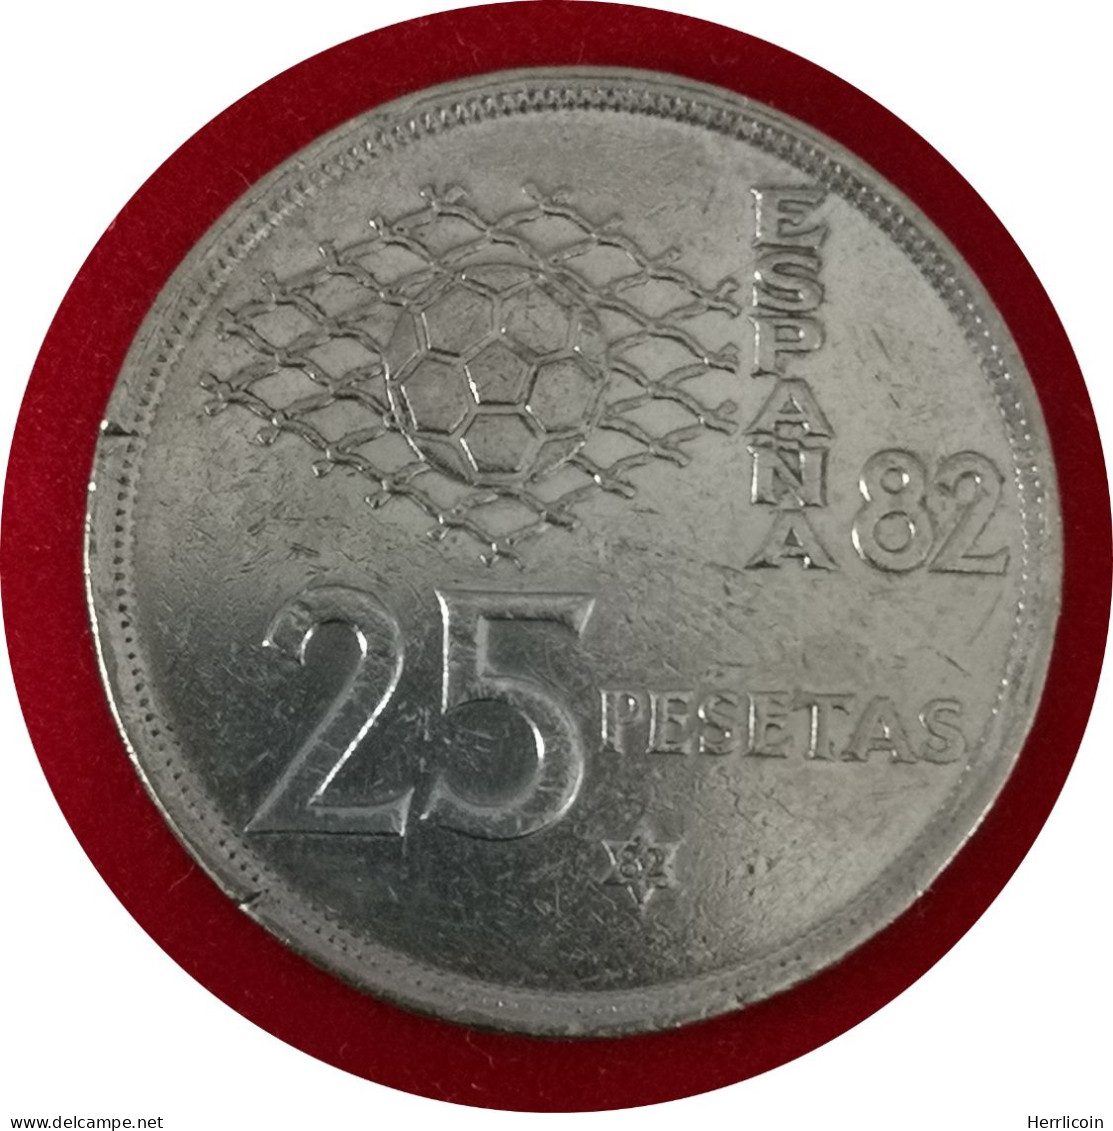 Monnaie Espagne - 1982 - 25 Pesetas España 82 - 25 Pesetas